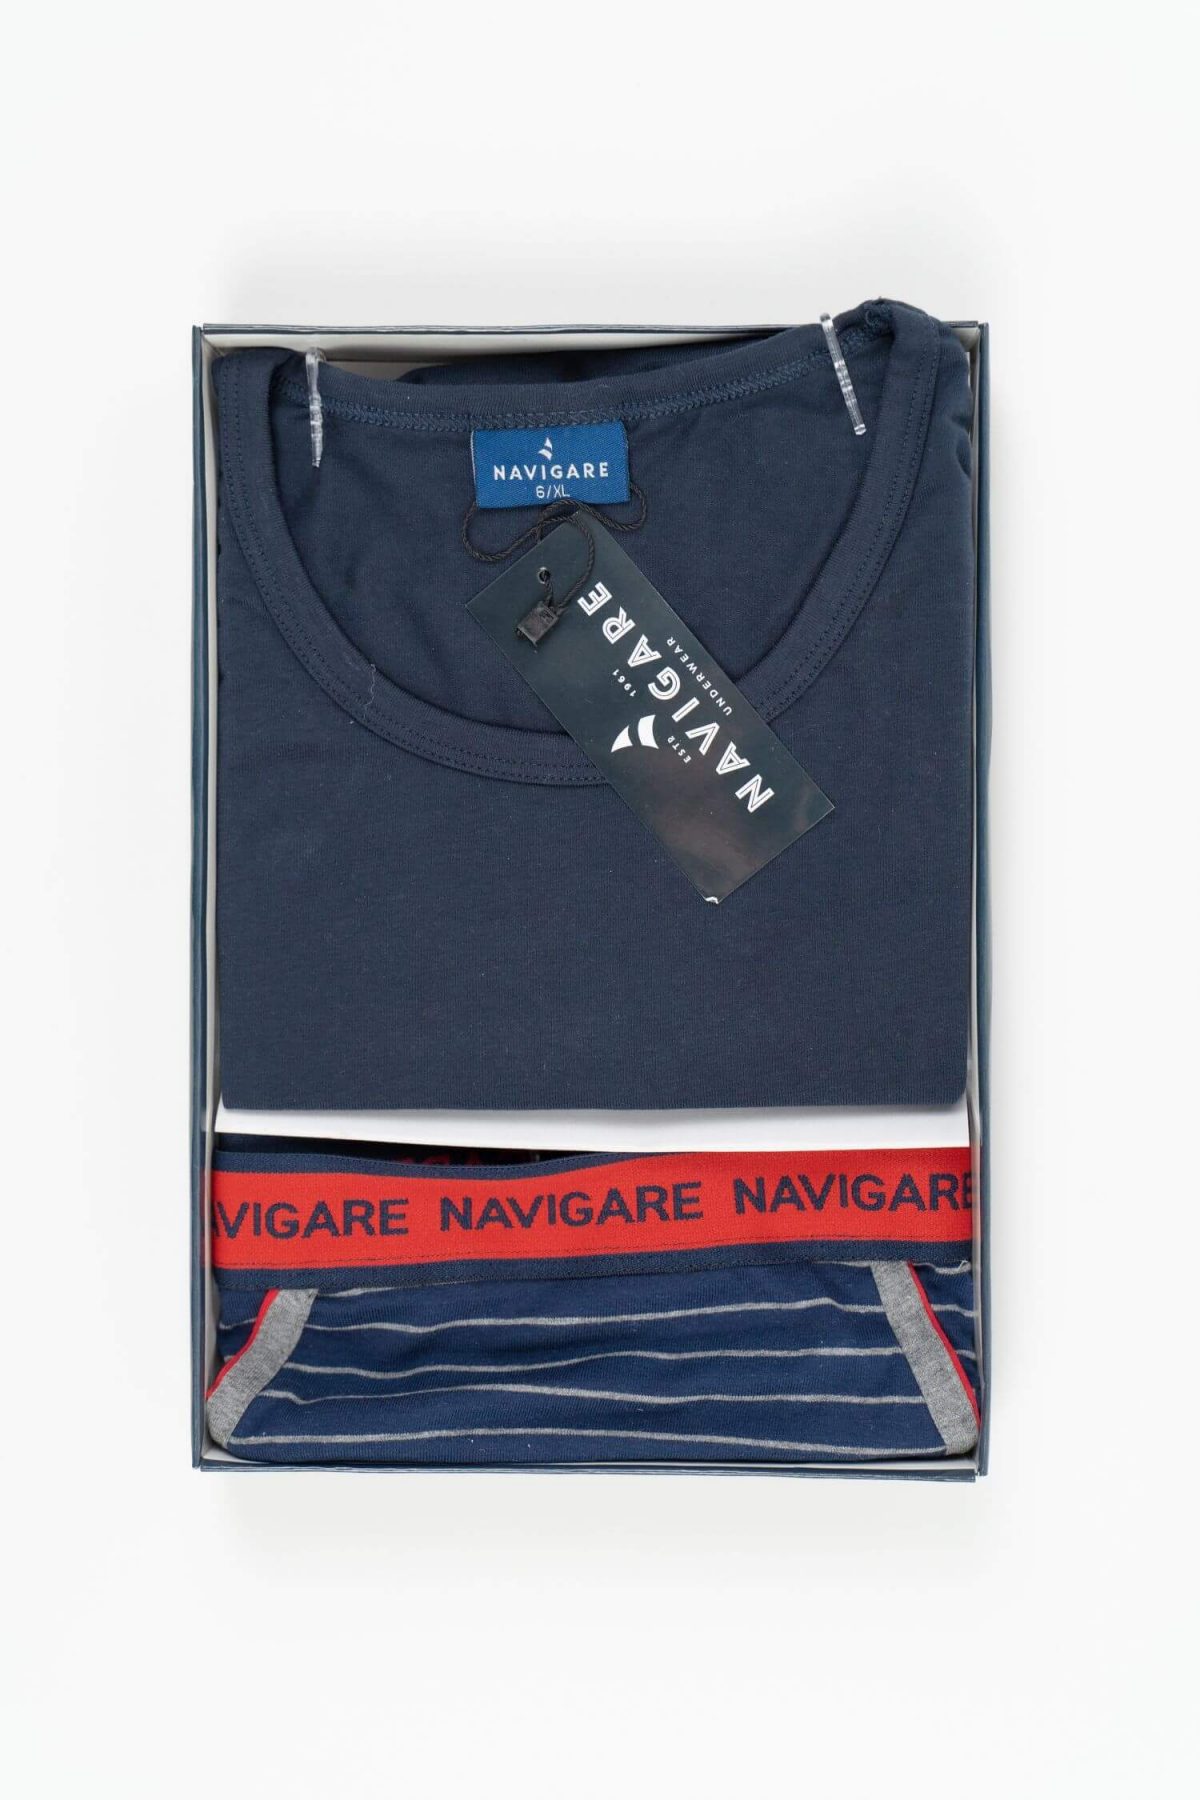 Navigare Intimo - Set majica i slip teget boje